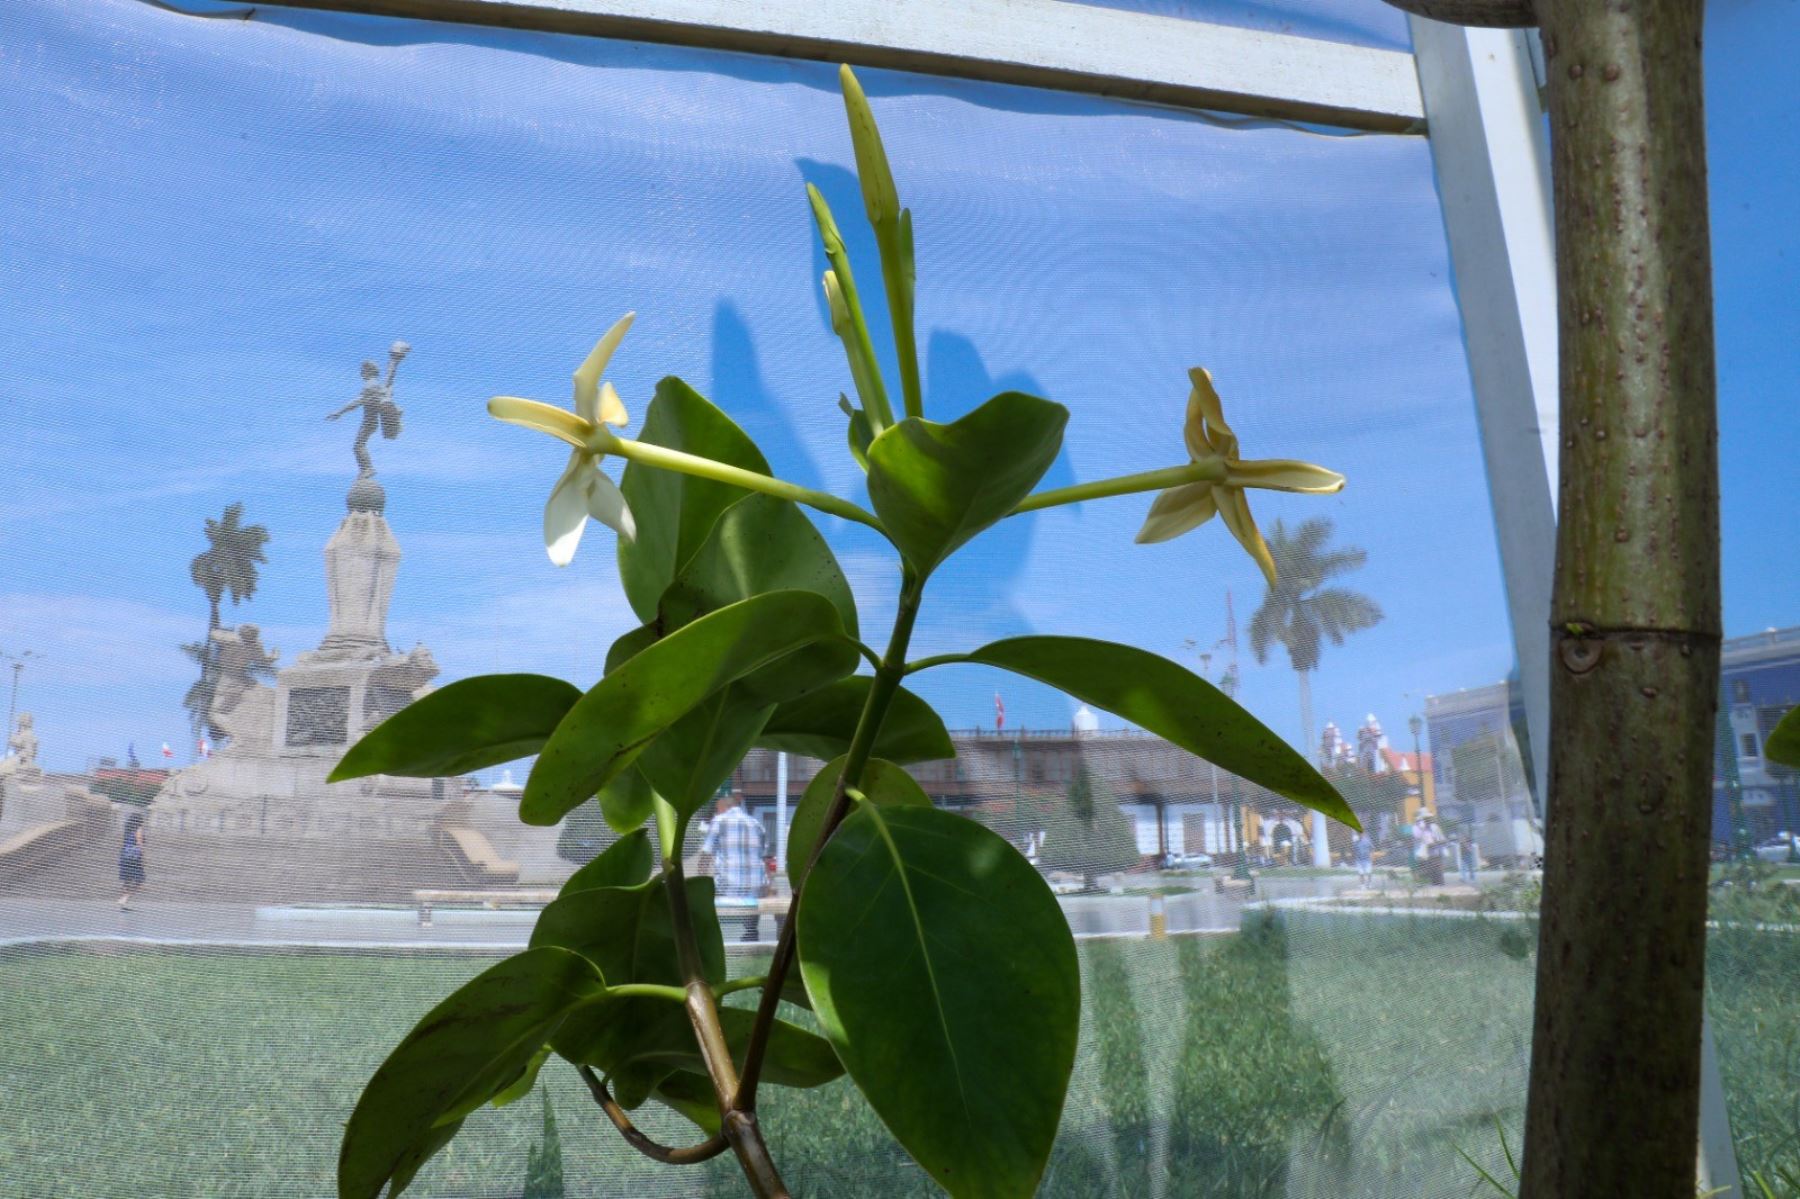 Con una flor blanca con líneas de amarillo intenso floreció la planta del árbol de la quina sembrada en la plaza de Armas de Trujillo. Foto: Luis Puell